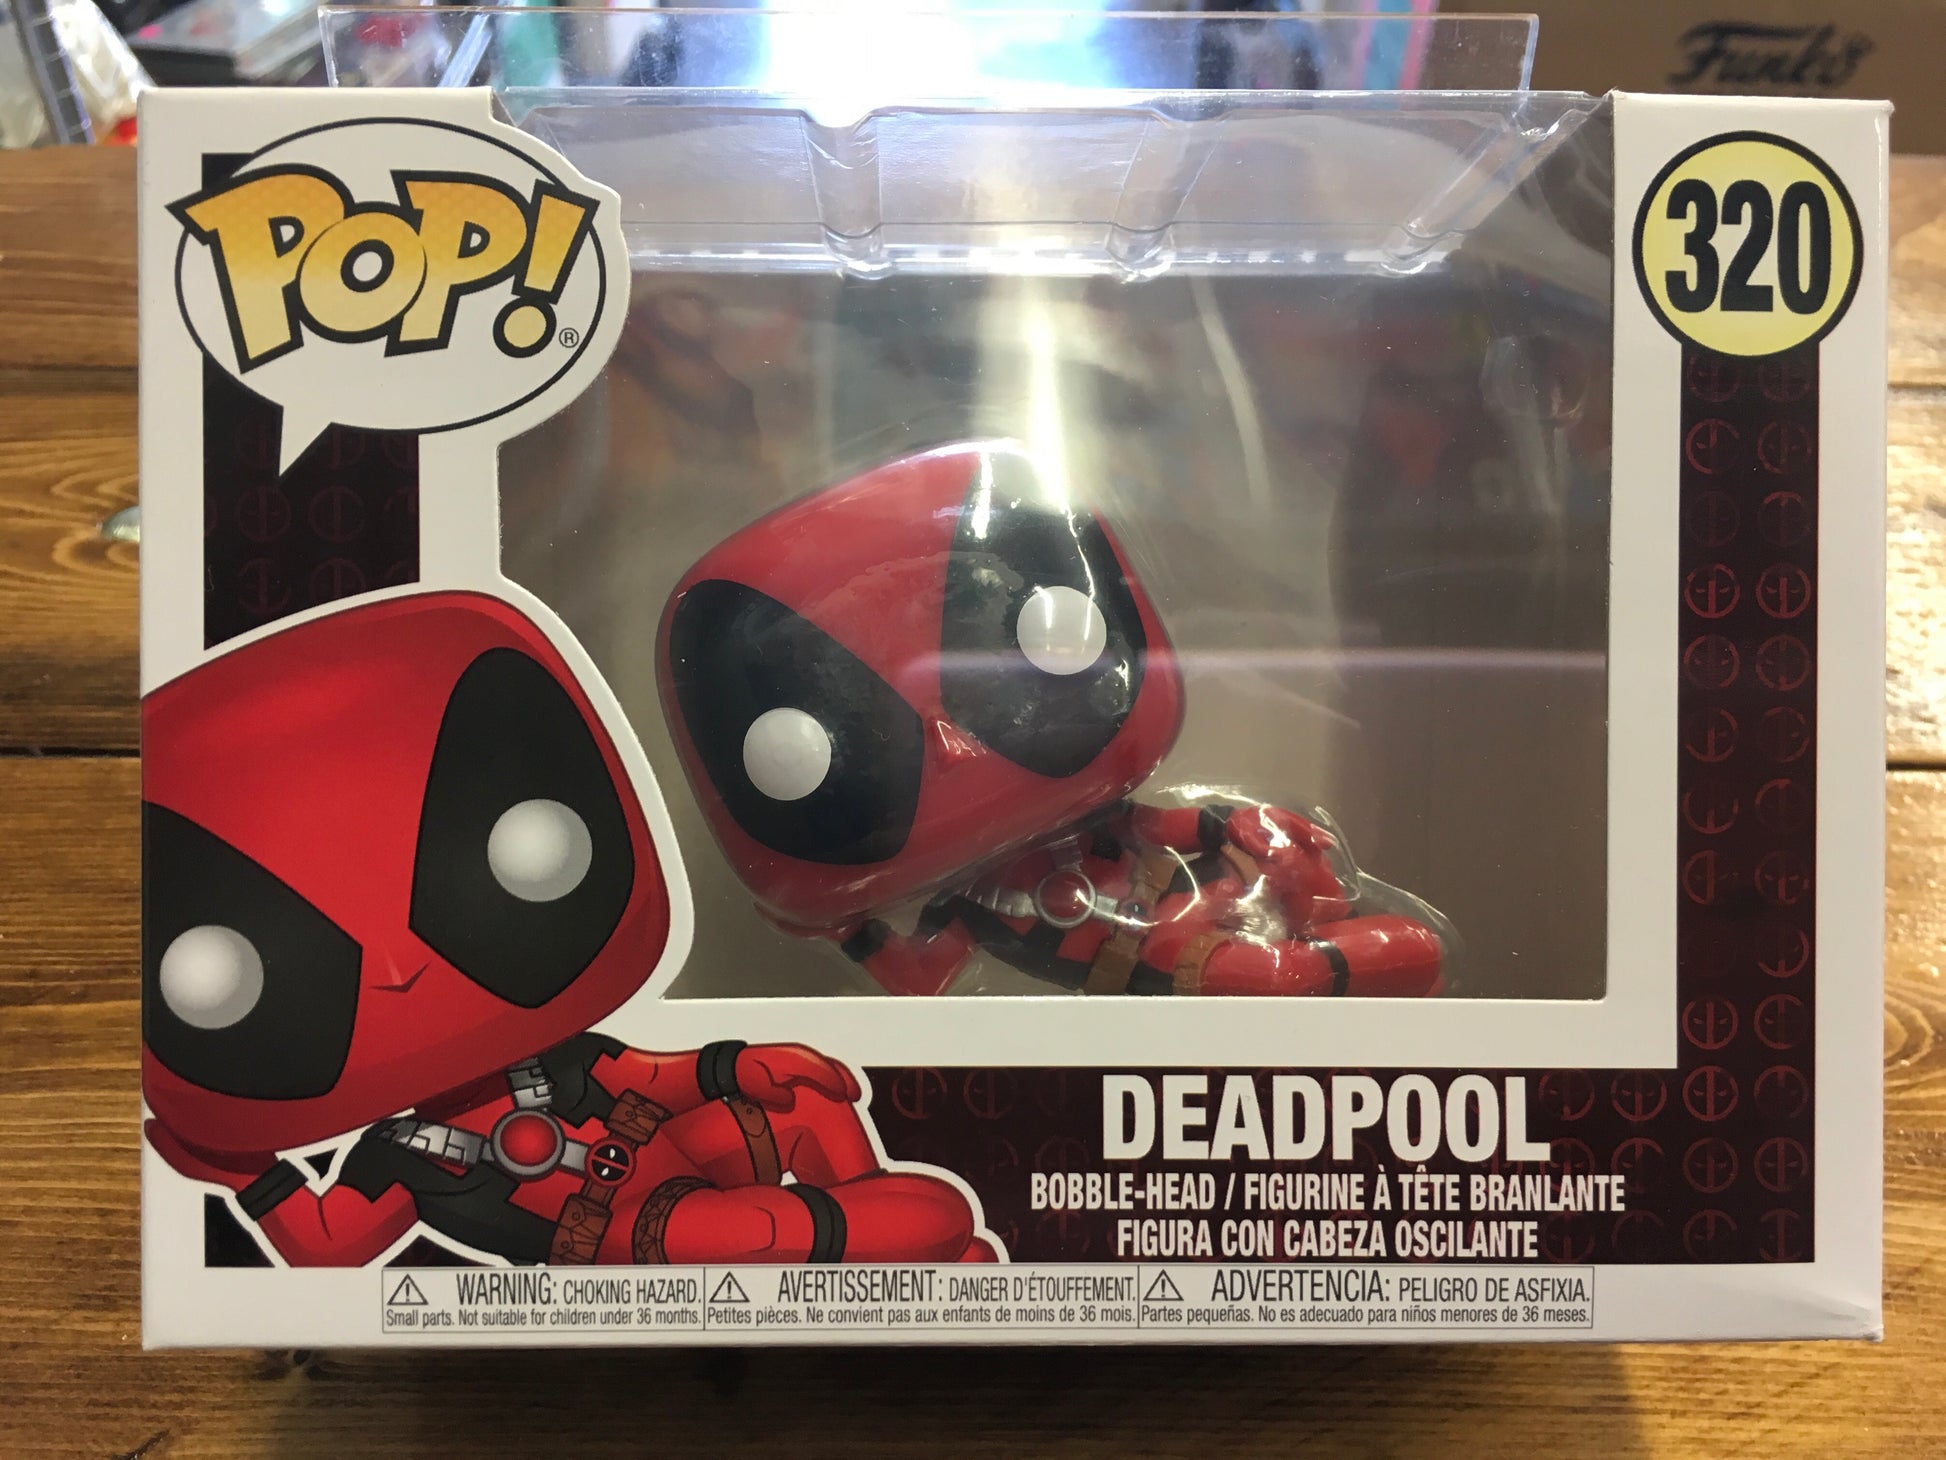 Funko POP! Marvel: Holiday Deadpool 3.75-in Vinyl Bobblehead